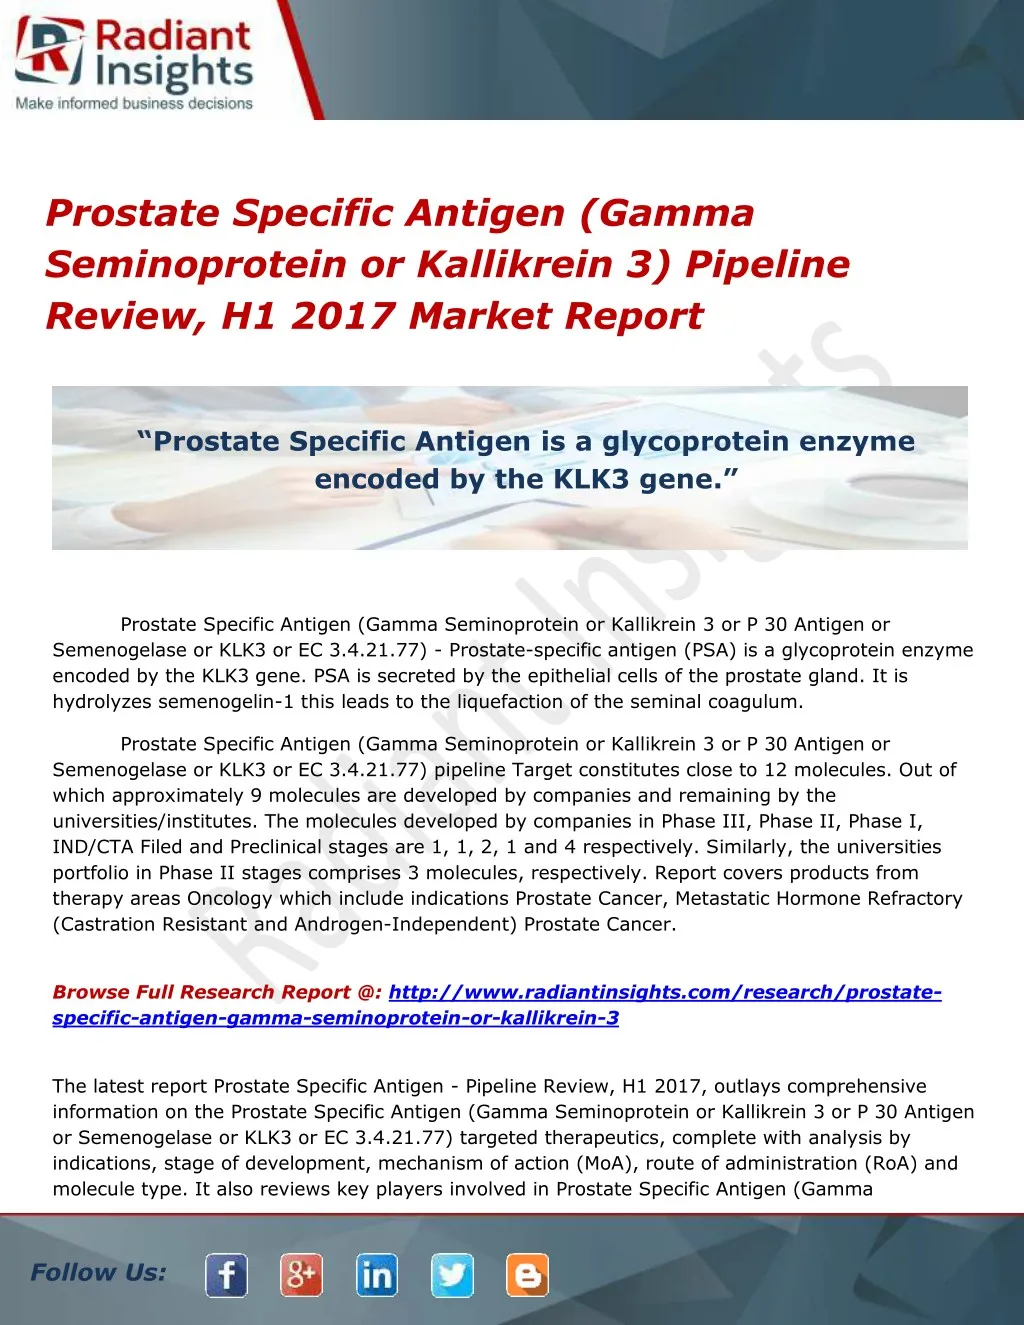 prostate specific antigen gamma seminoprotein